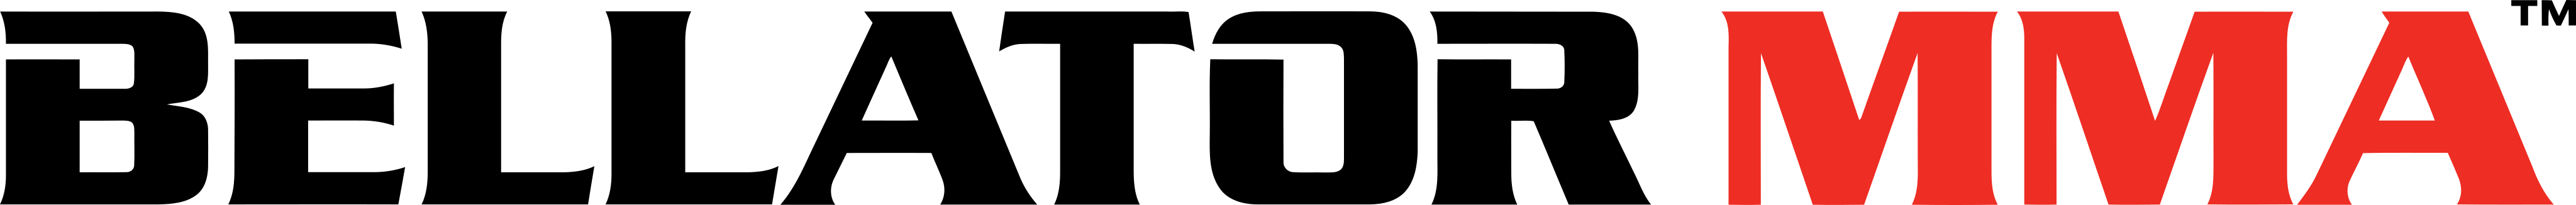 bellator mma logo - Bellator MMA Logo